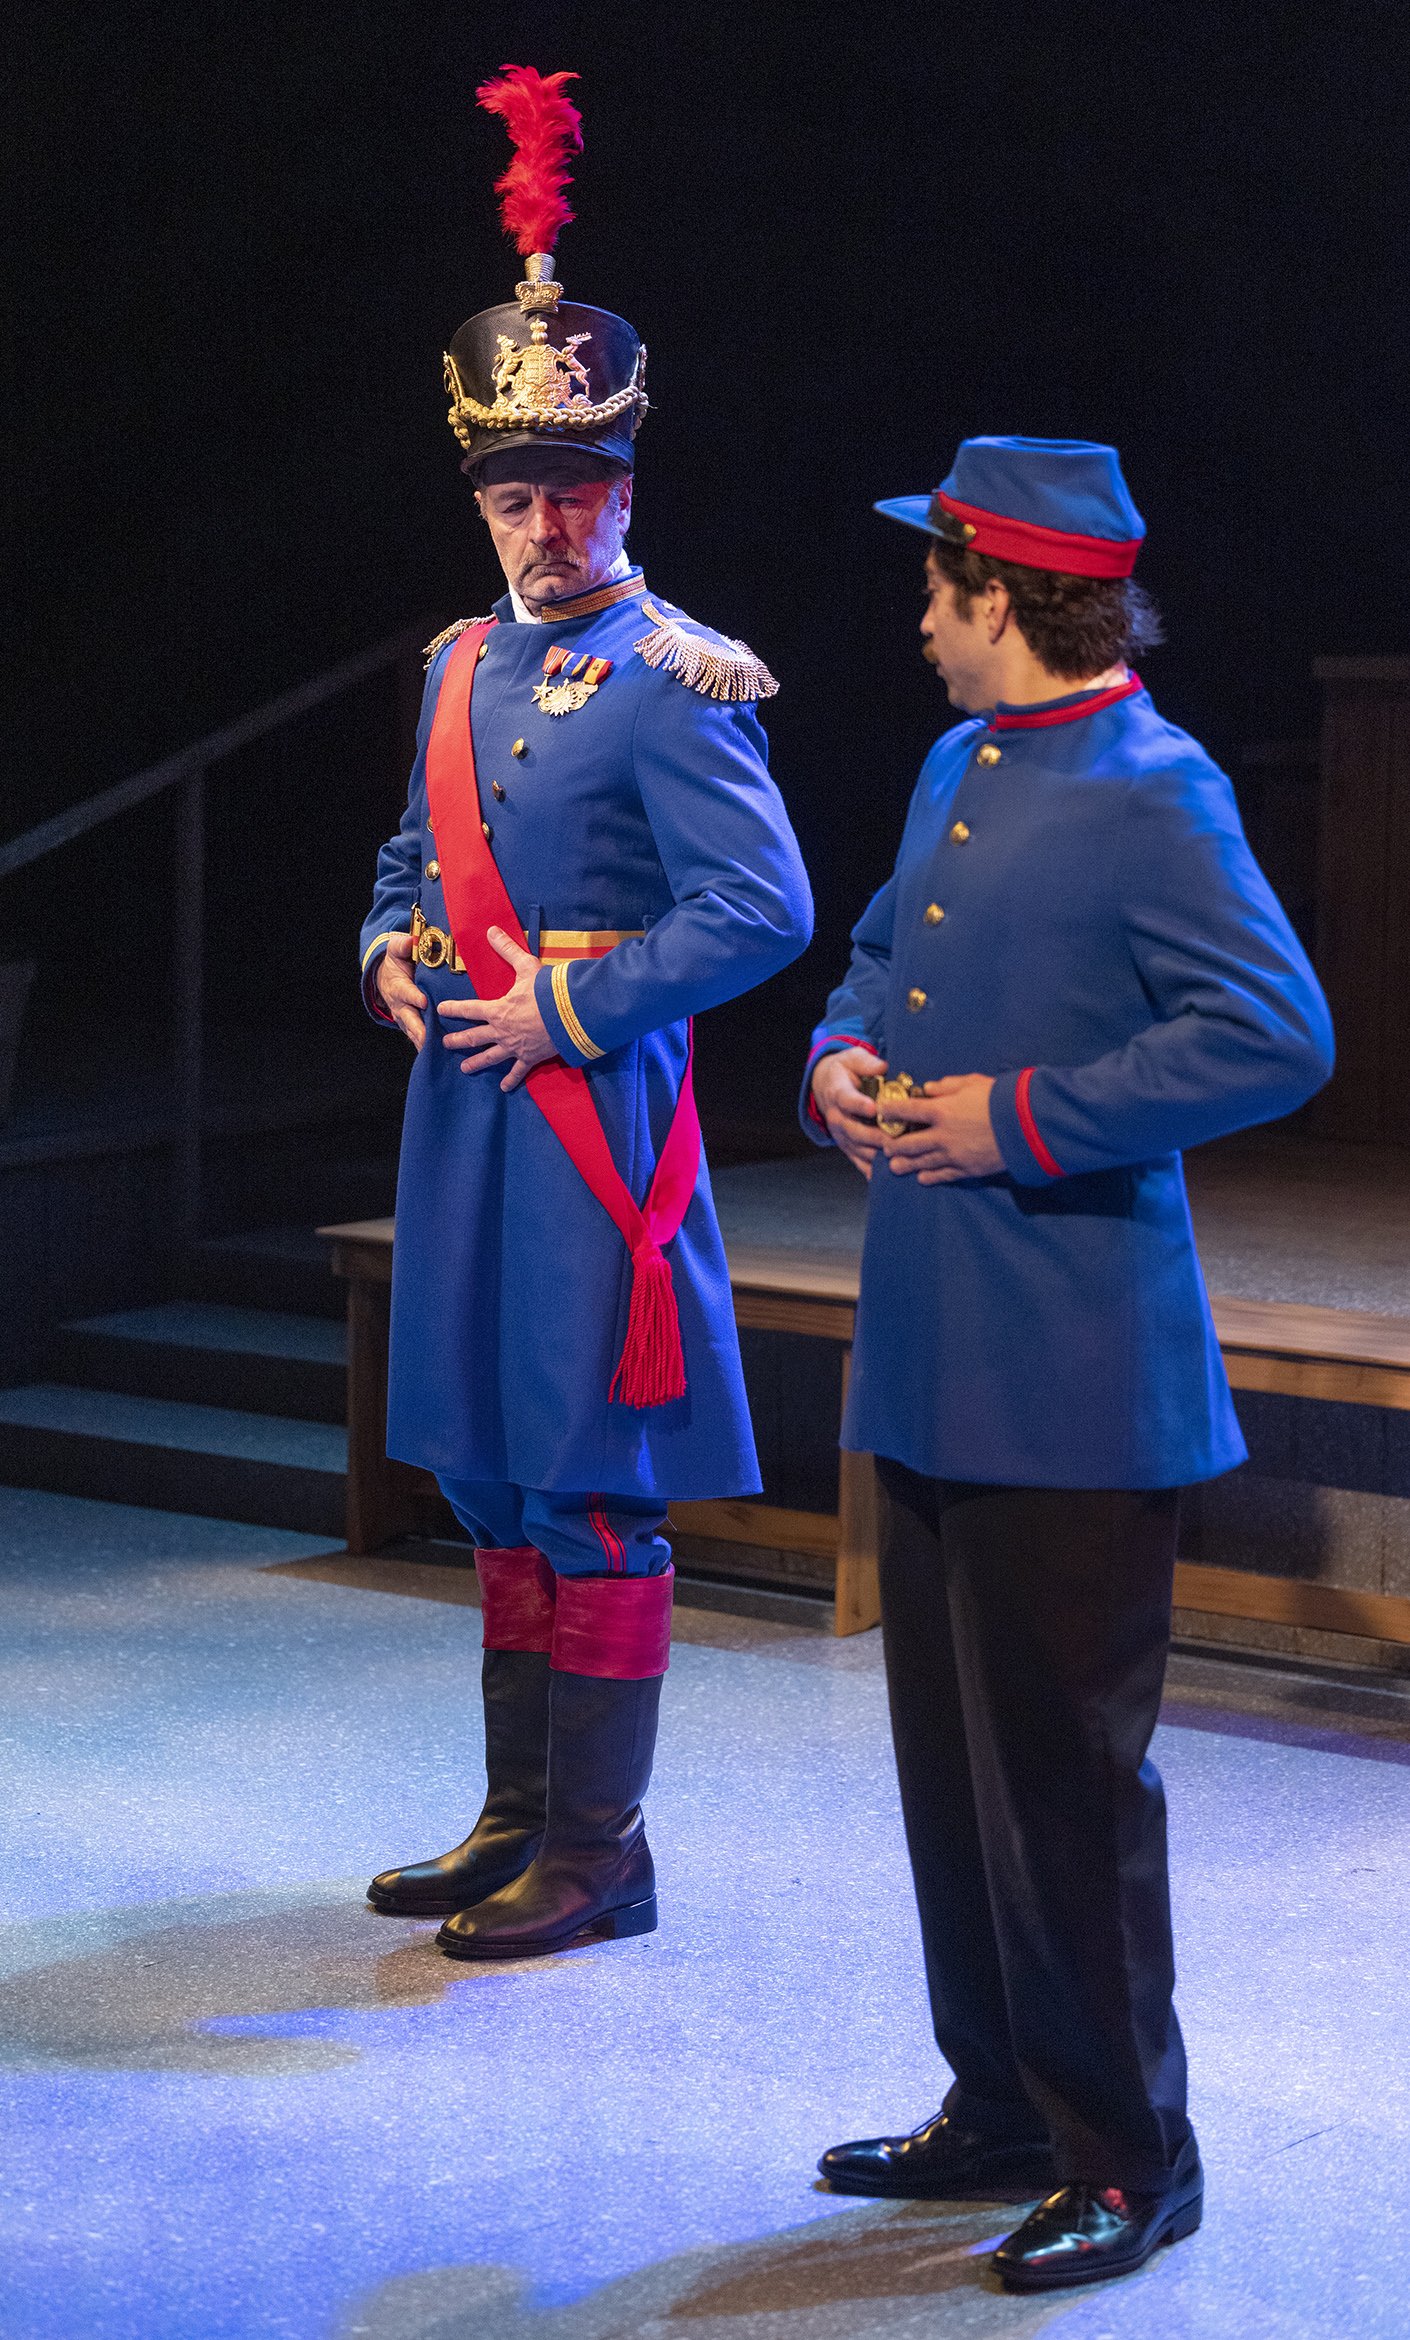 David Greenwood as General Loewenheilm and Hunter Hnat as Lt. Loewenheilm. Photo by Tim Fuller.